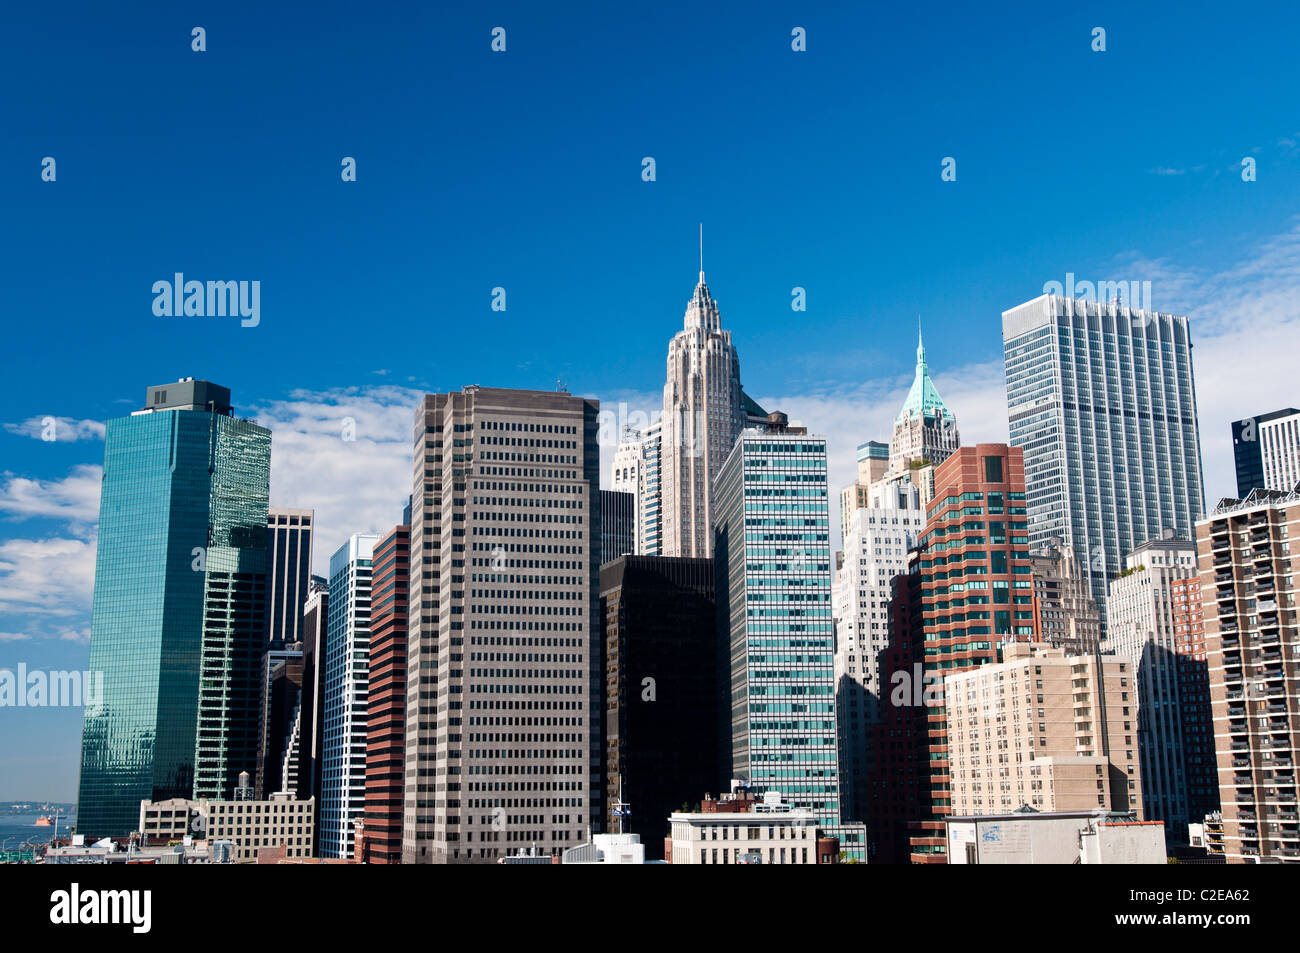 Là trung tâm tài chính và kinh tế của thành phố New York, Lower Manhattan là địa điểm hấp dẫn với những cao ốc văn phòng độc đáo và các tòa nhà lịch sử nổi tiếng. Hãy thưởng thức những khung cảnh ấn tượng và đắm mình trong sự trầm lắng của khu đô thị sầm uất này.